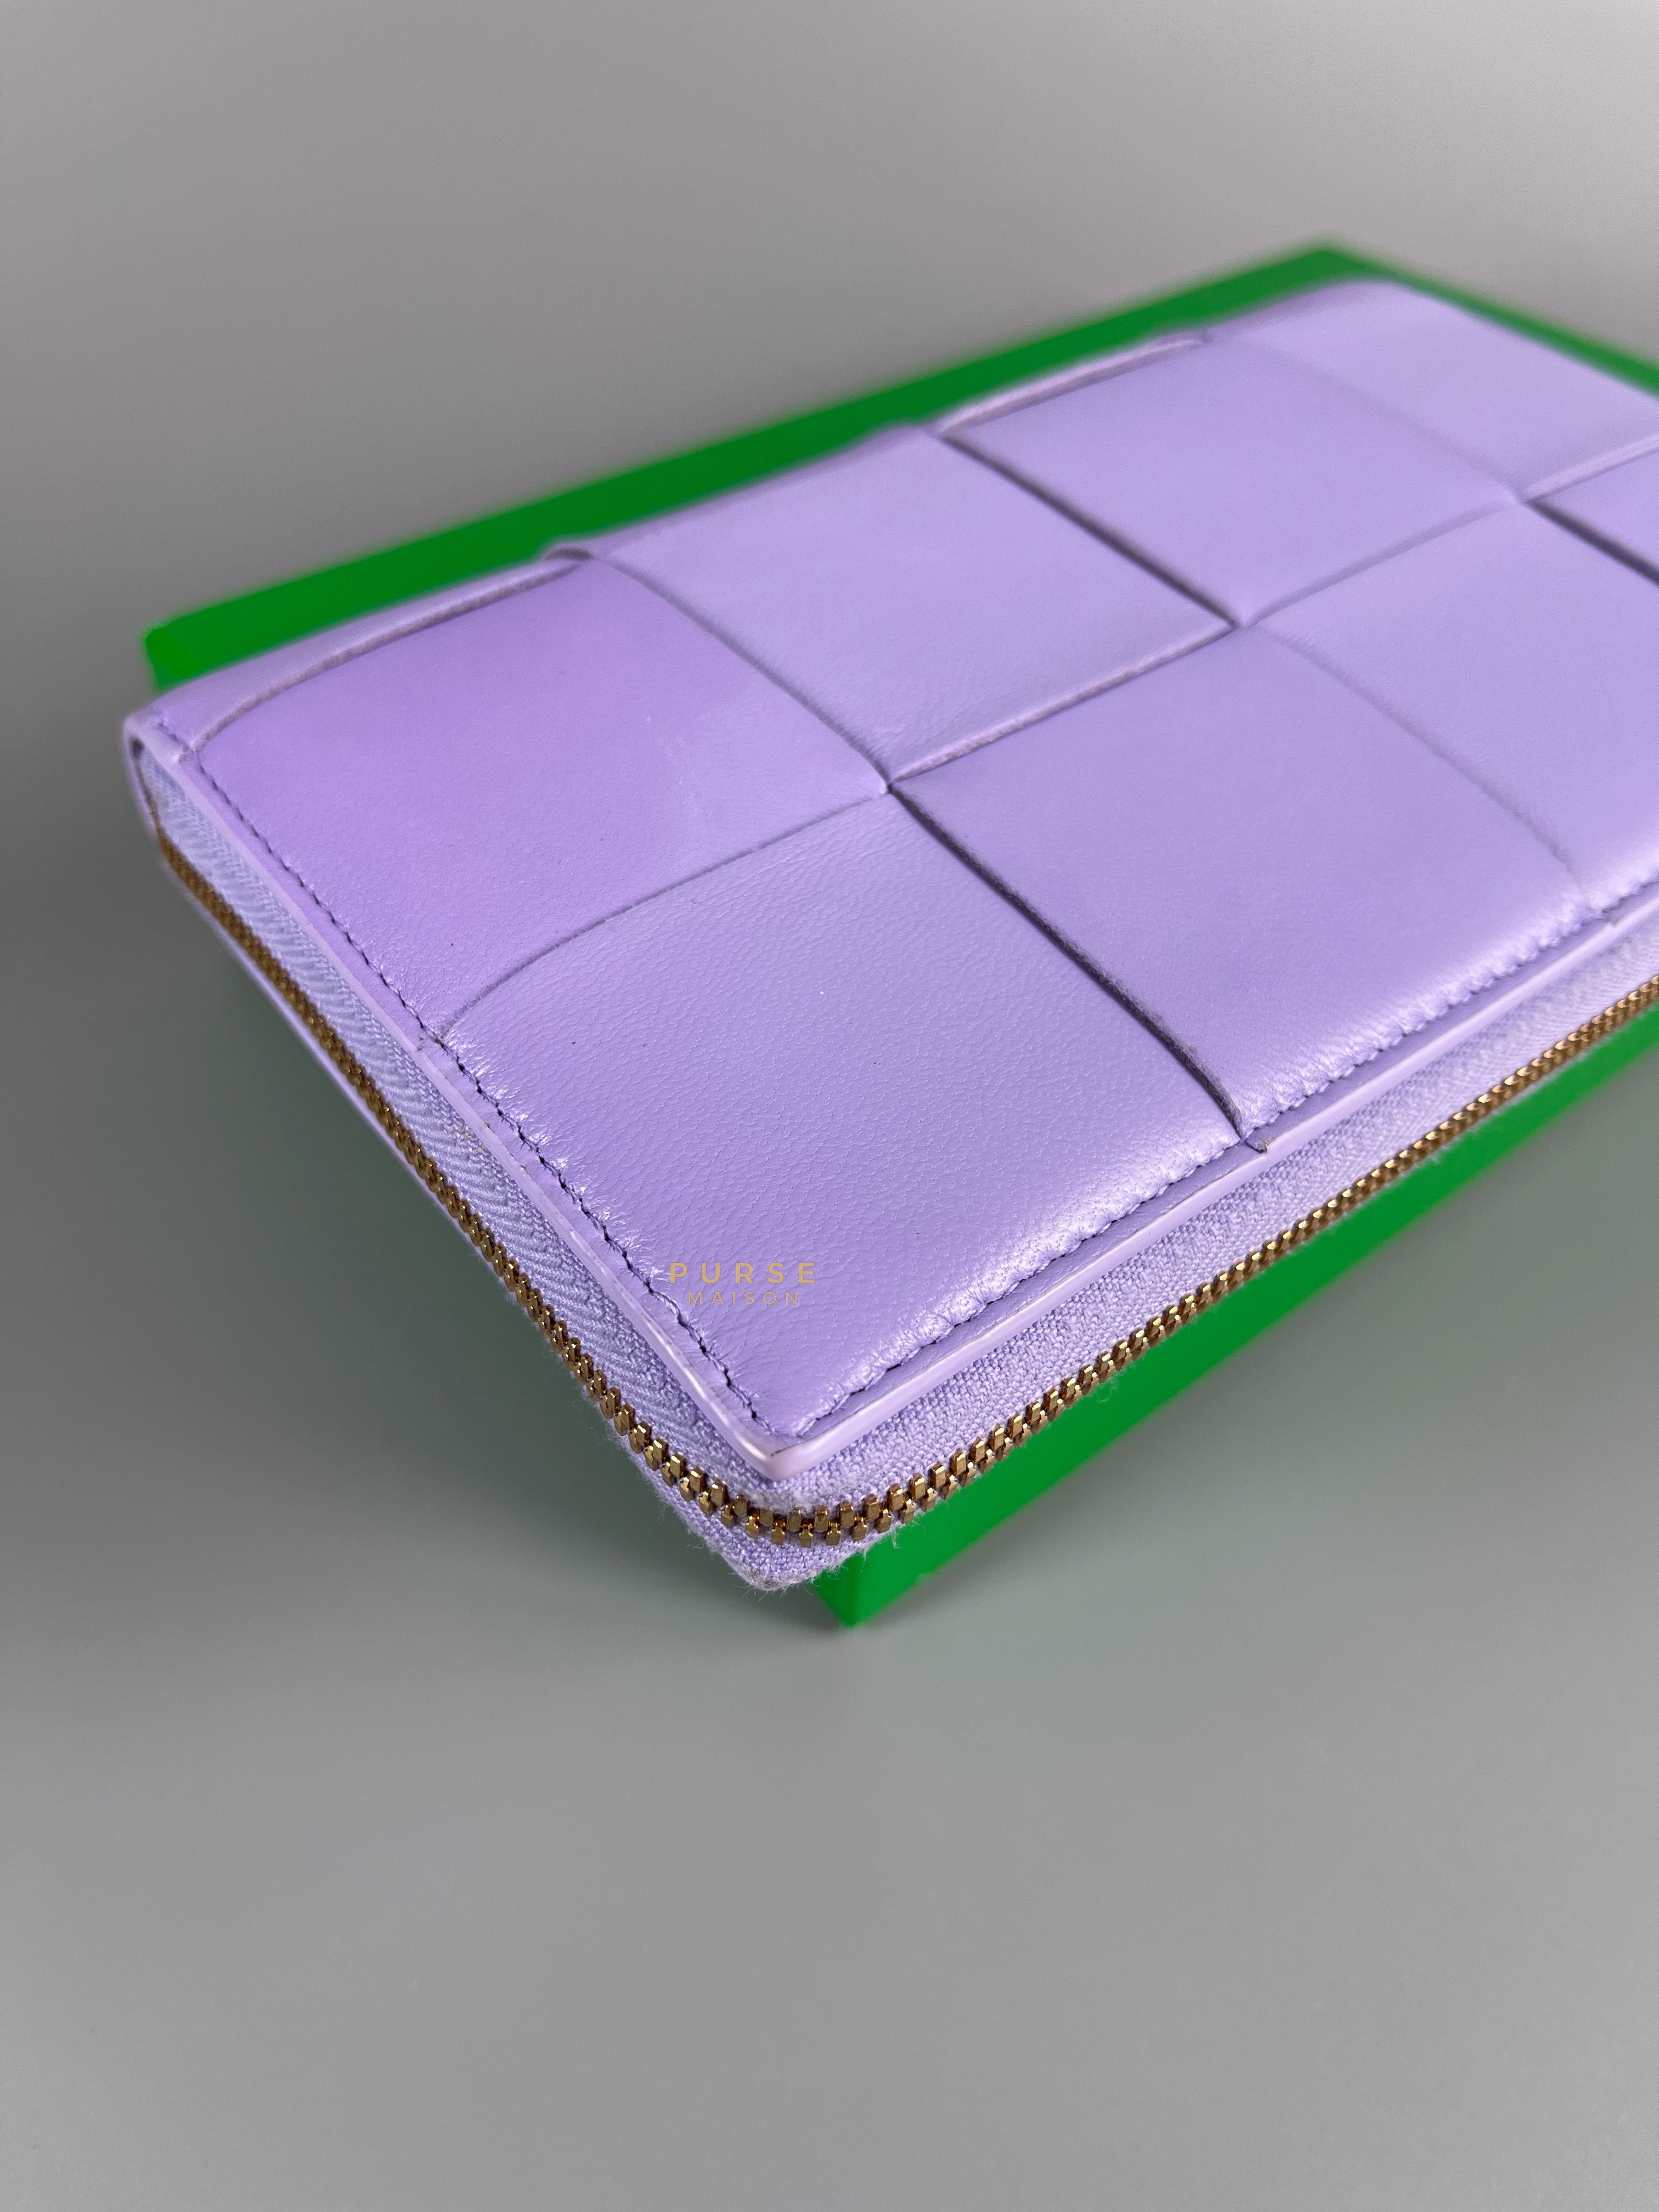 Bottega Veneta Cassette Long Zip Wallet in Purple | Purse Maison Luxury Bags Shop